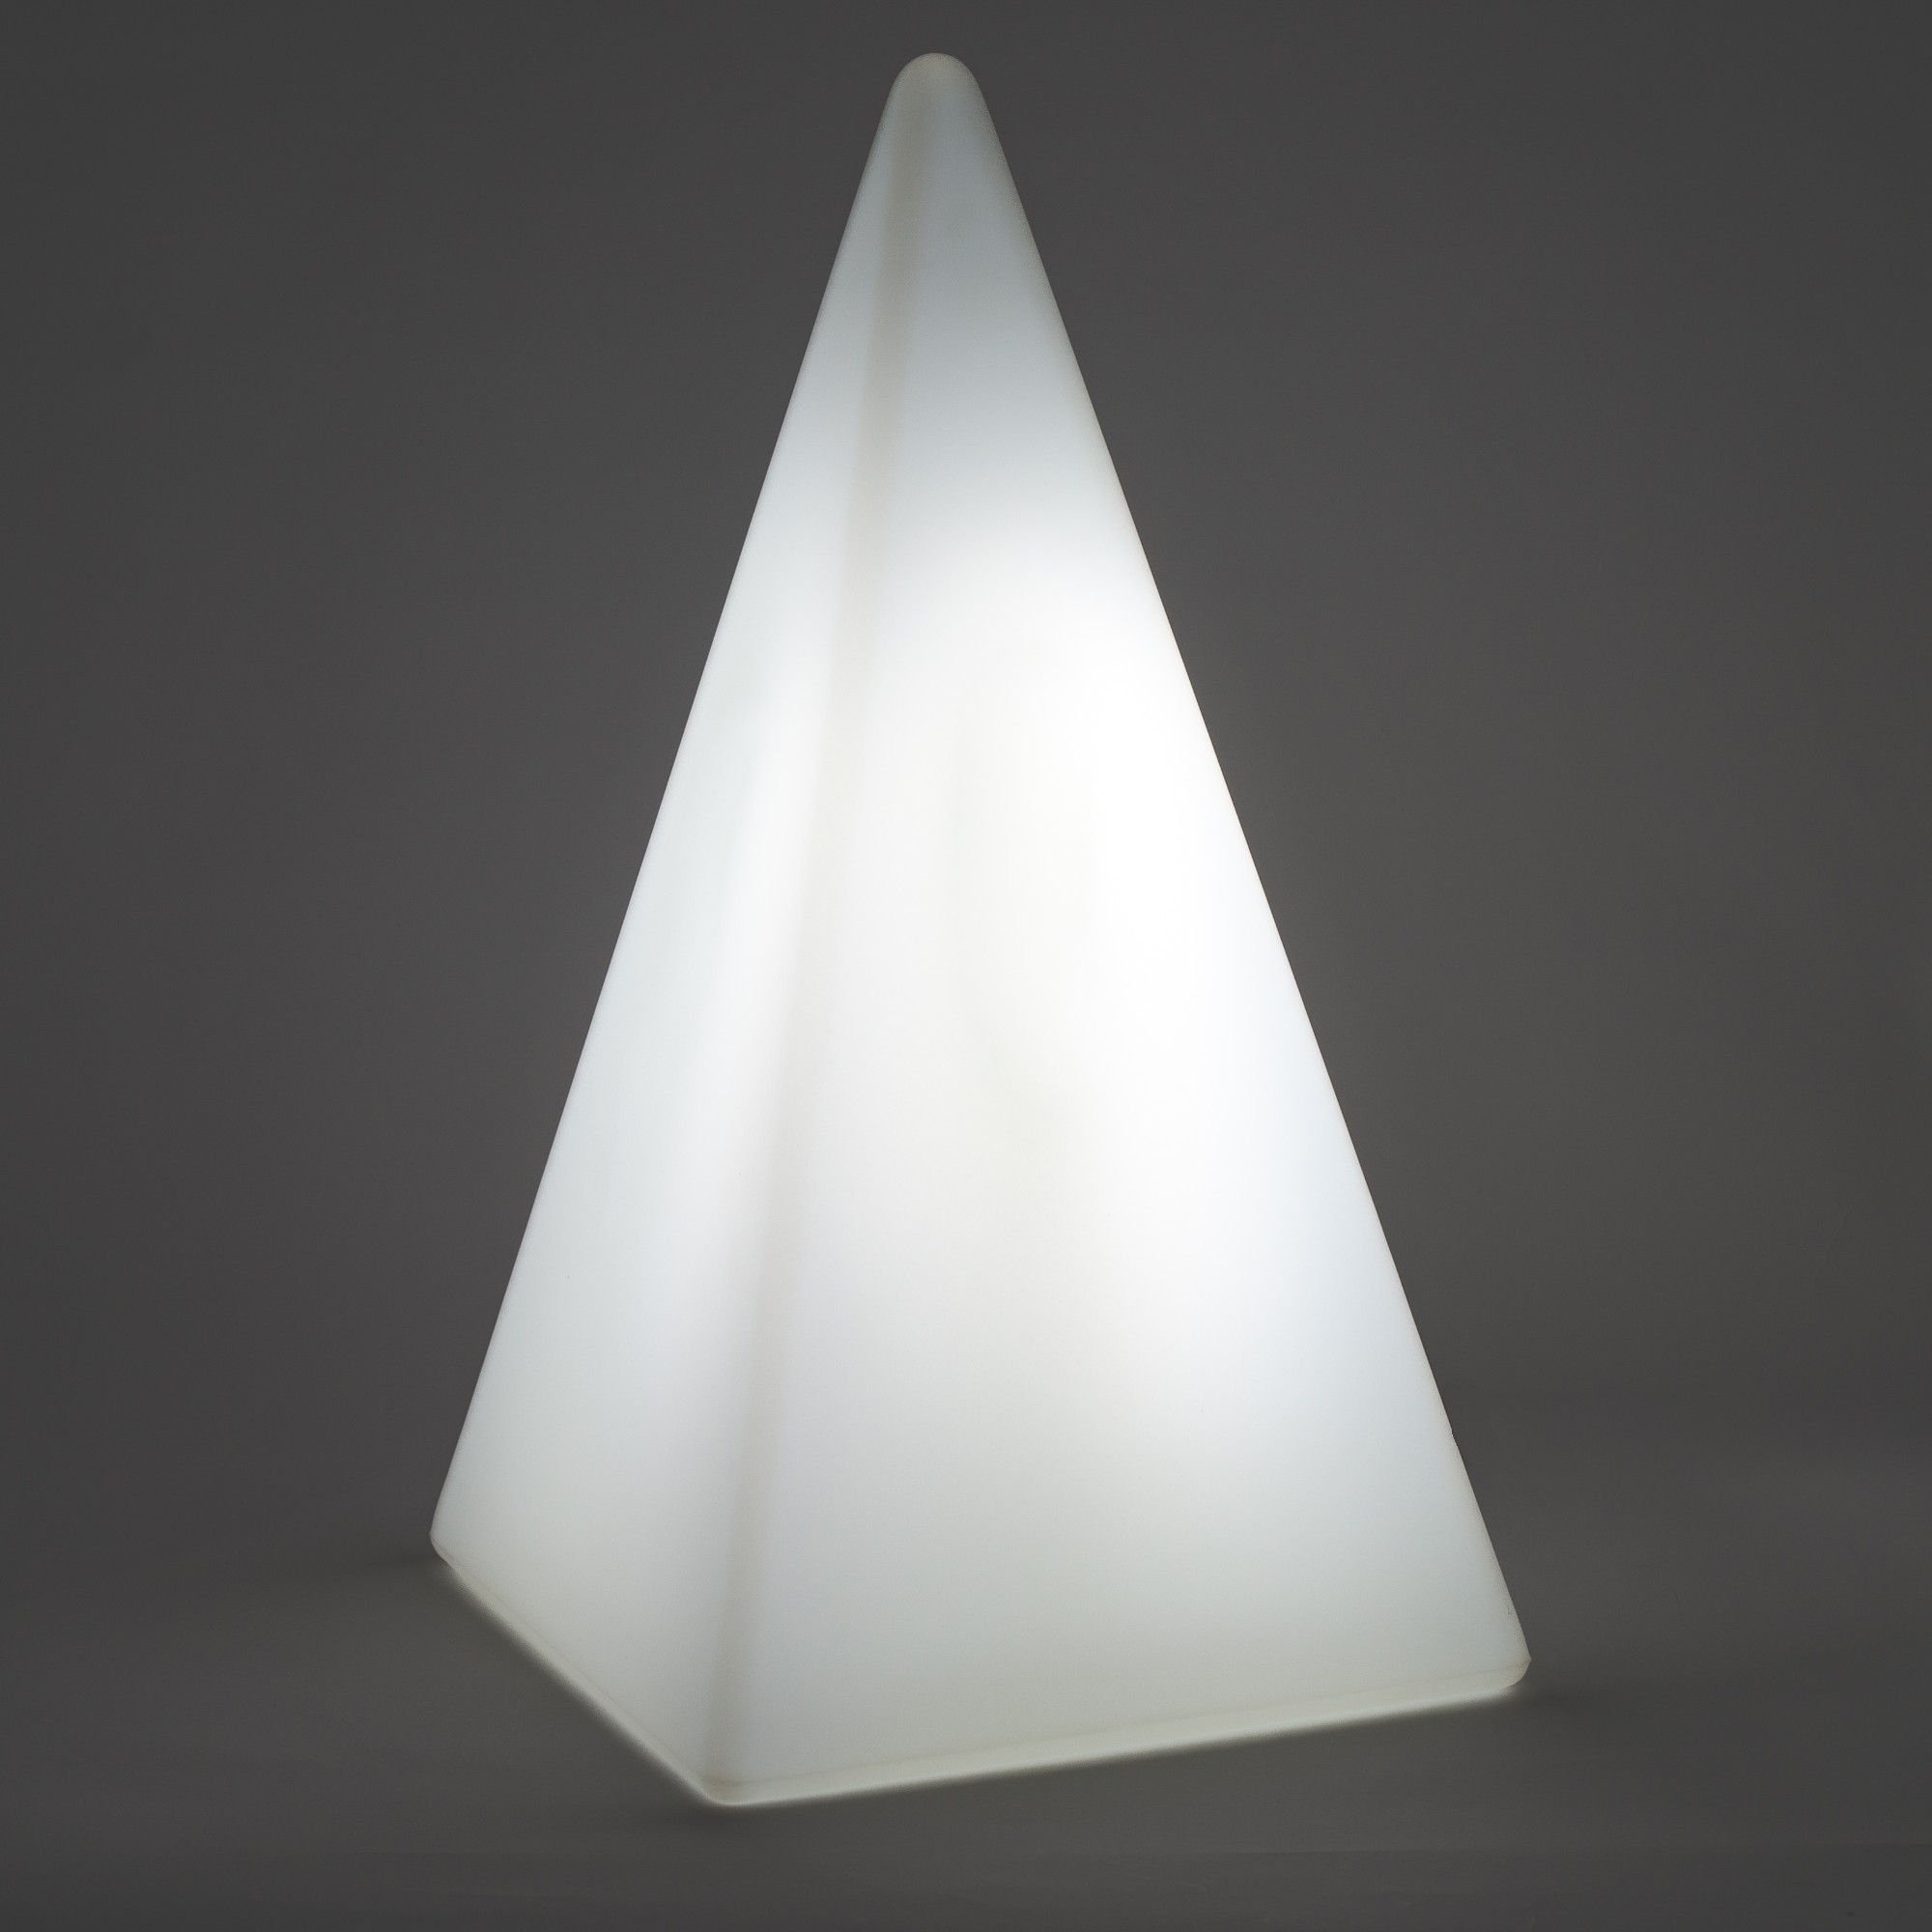 70102 Standleuchte Pyramide 36 cm der Firma EPSTEIN Design Leuchten